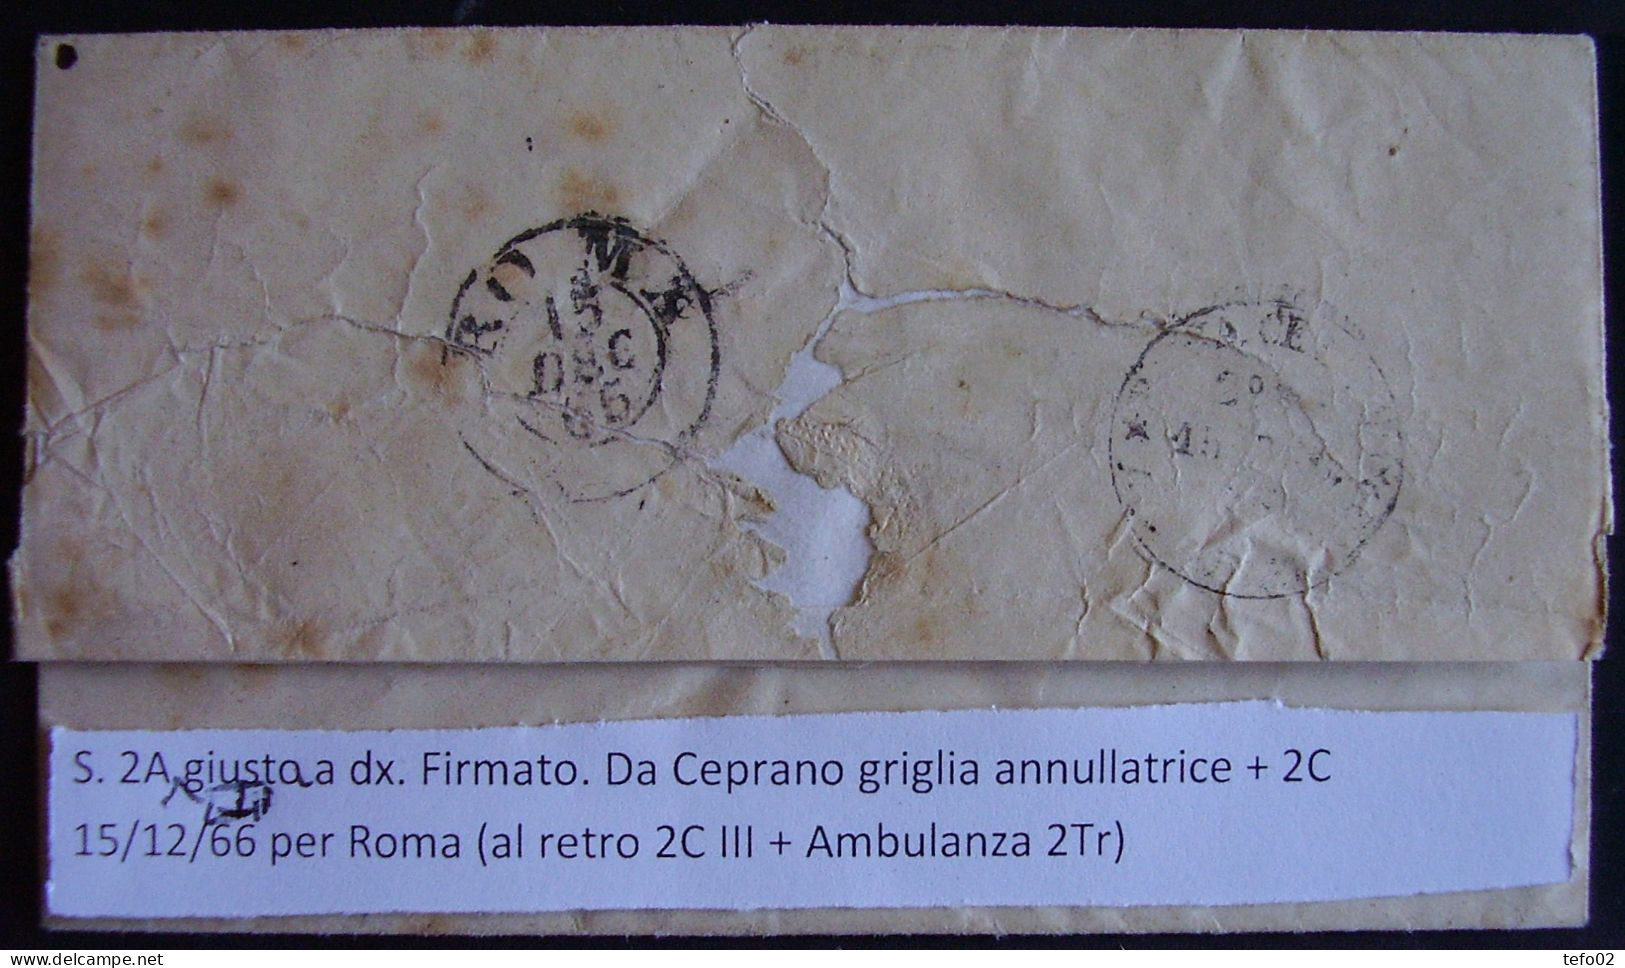 Pontificio. Storia postale. La Direzione postale di Frosinone